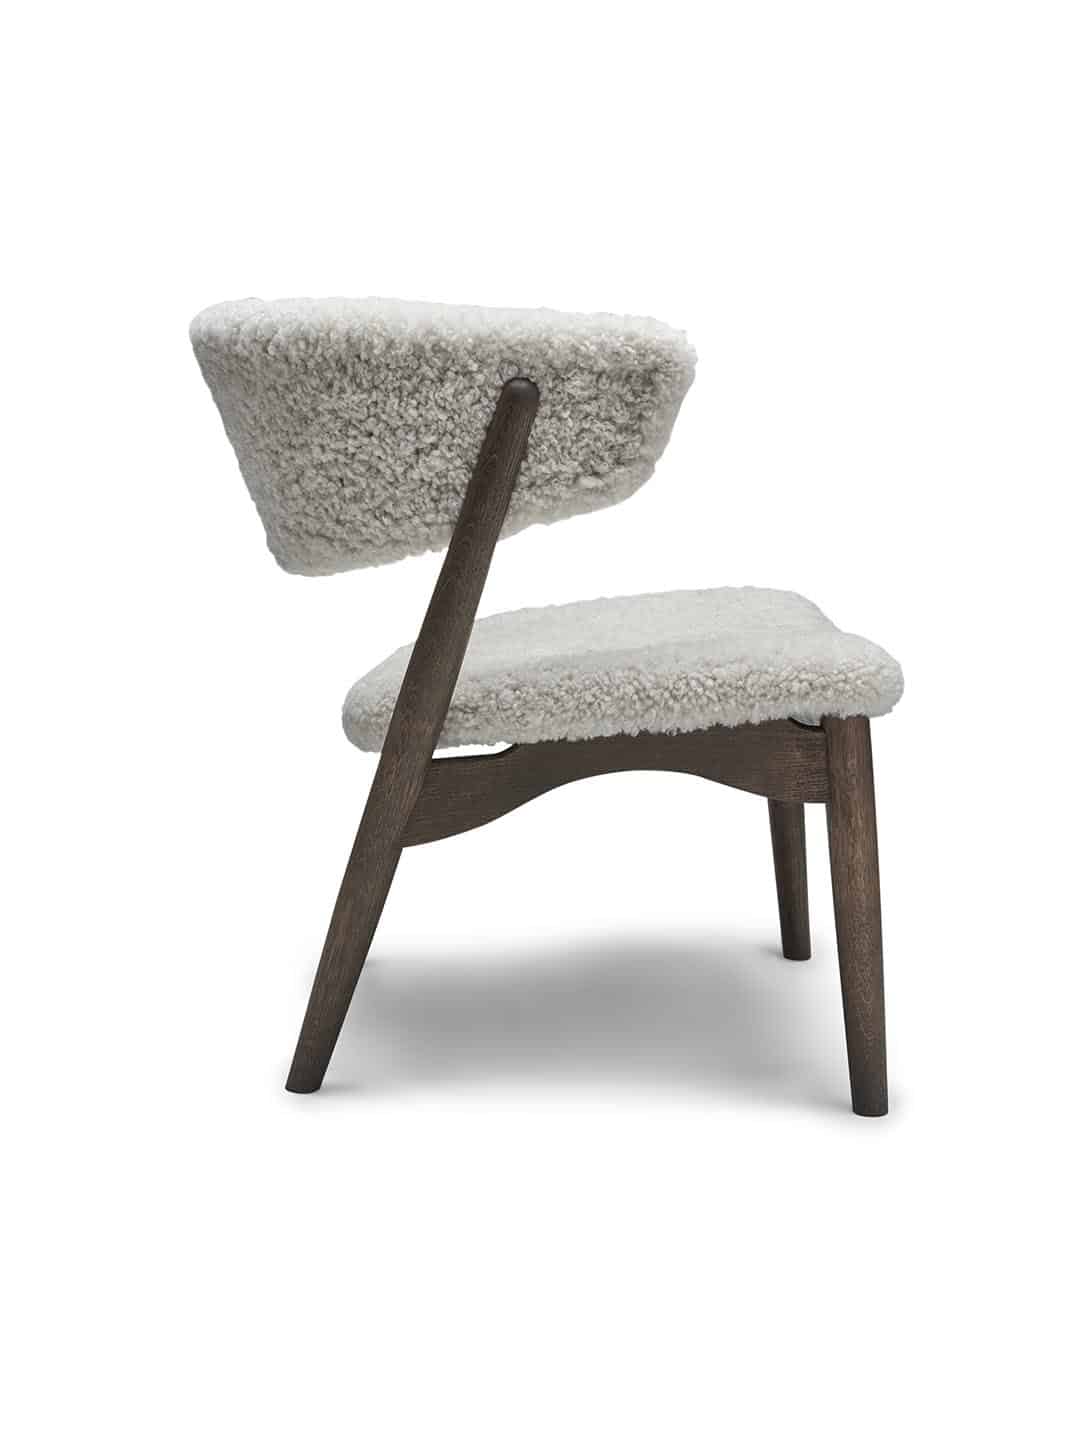 Дизайнерское кресло для отдыха Sibast №7 с обивкой из белой овечьей шерсти